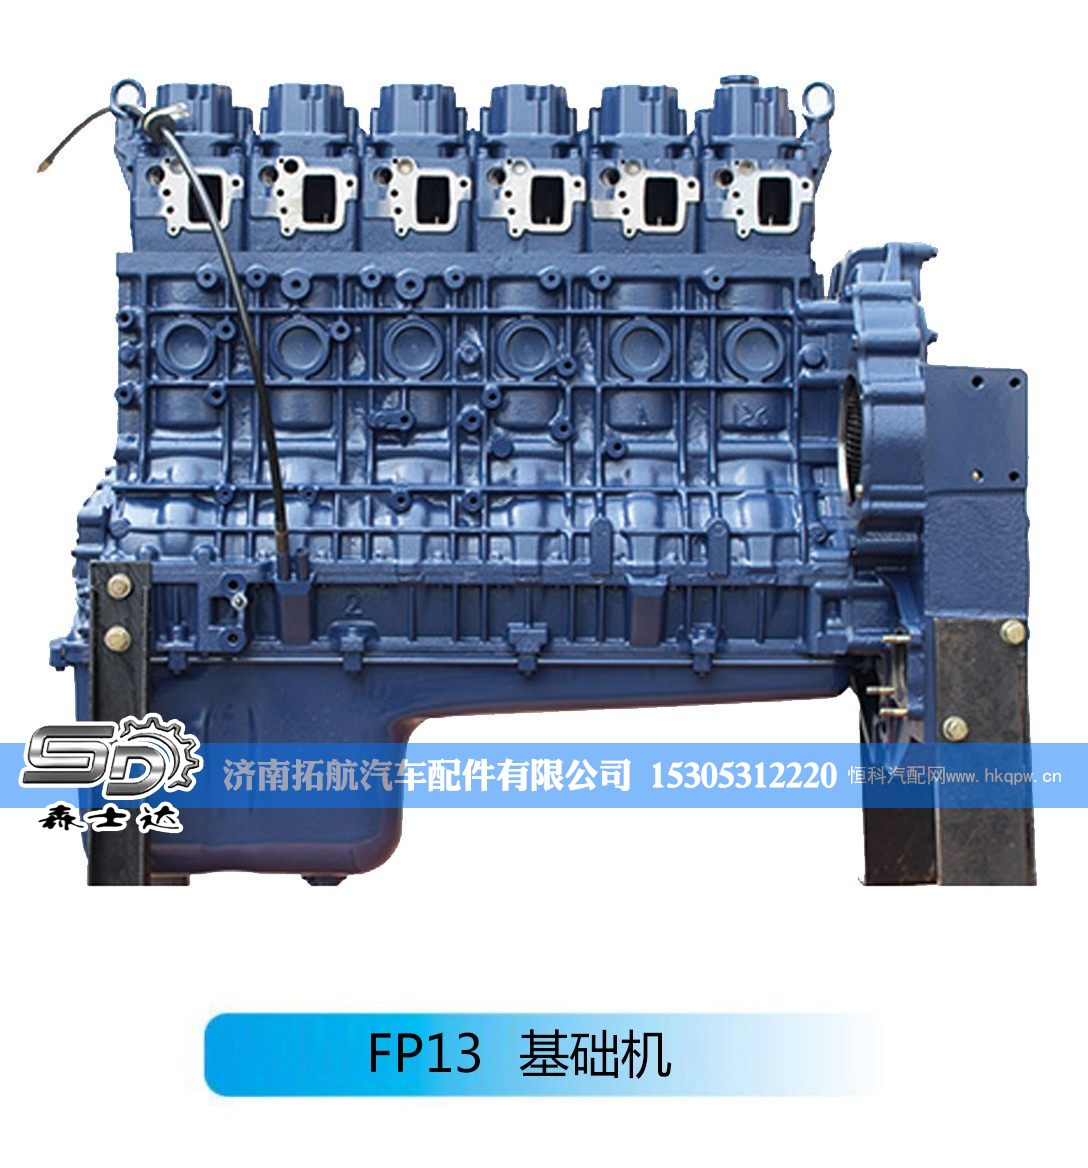 ,潍柴系列柴油发动机--FP13基础机,济南拓航汽车配件有限公司